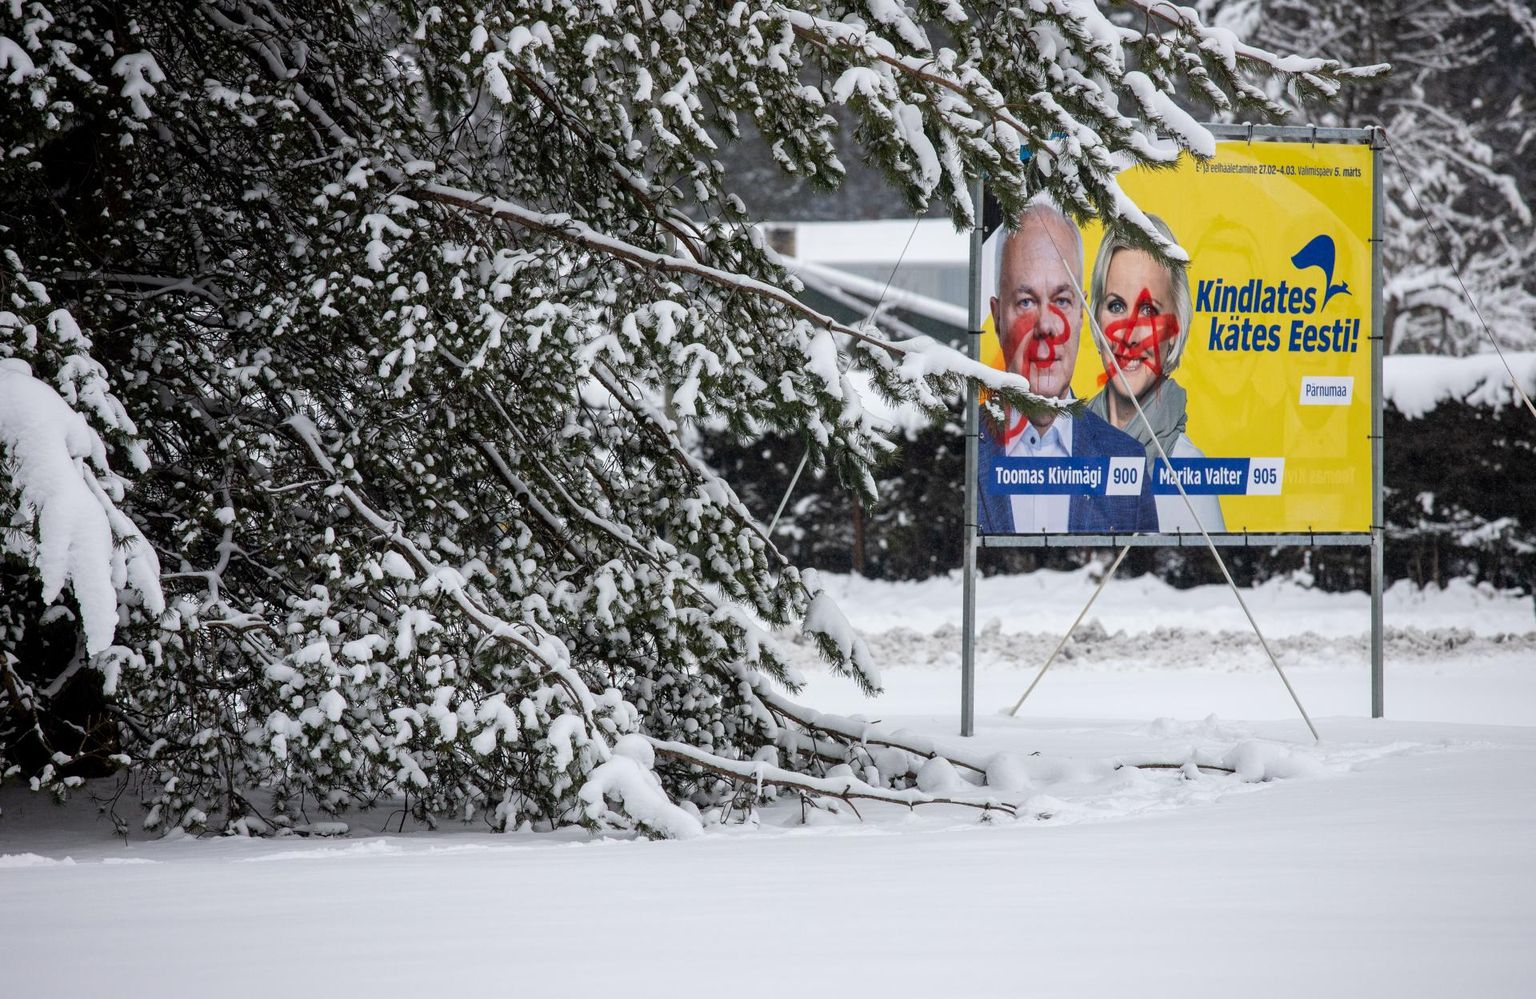 Изрисованный аэрозольной краской предвыборный плакат на Пайдеском шоссе в Пайкузе.